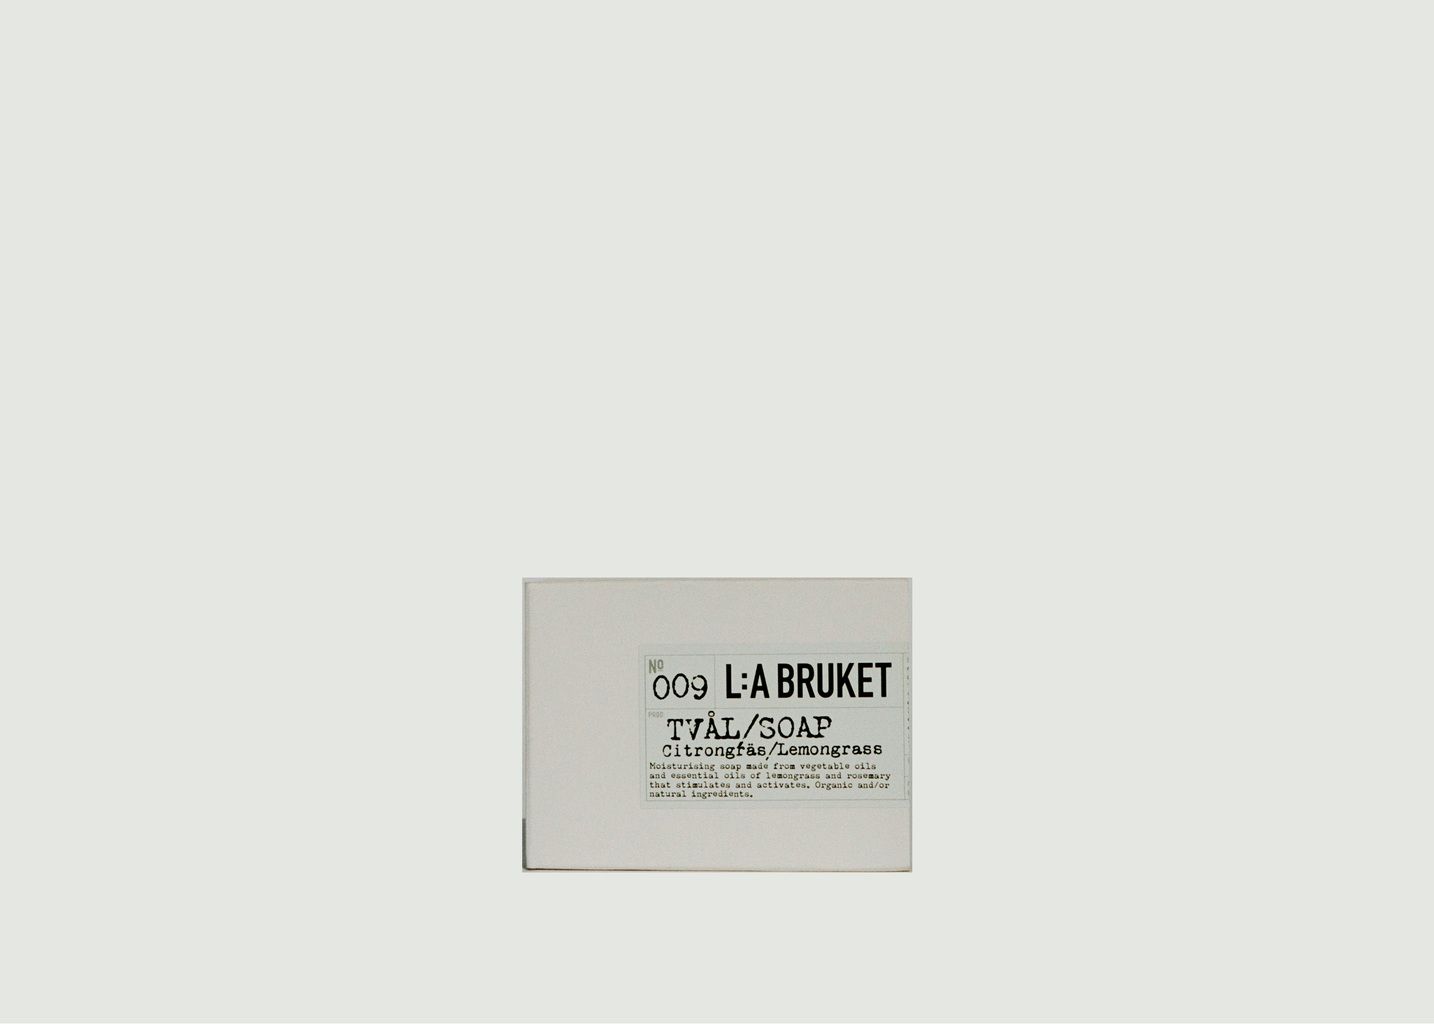 Barre de savon 009 - L:A Bruket